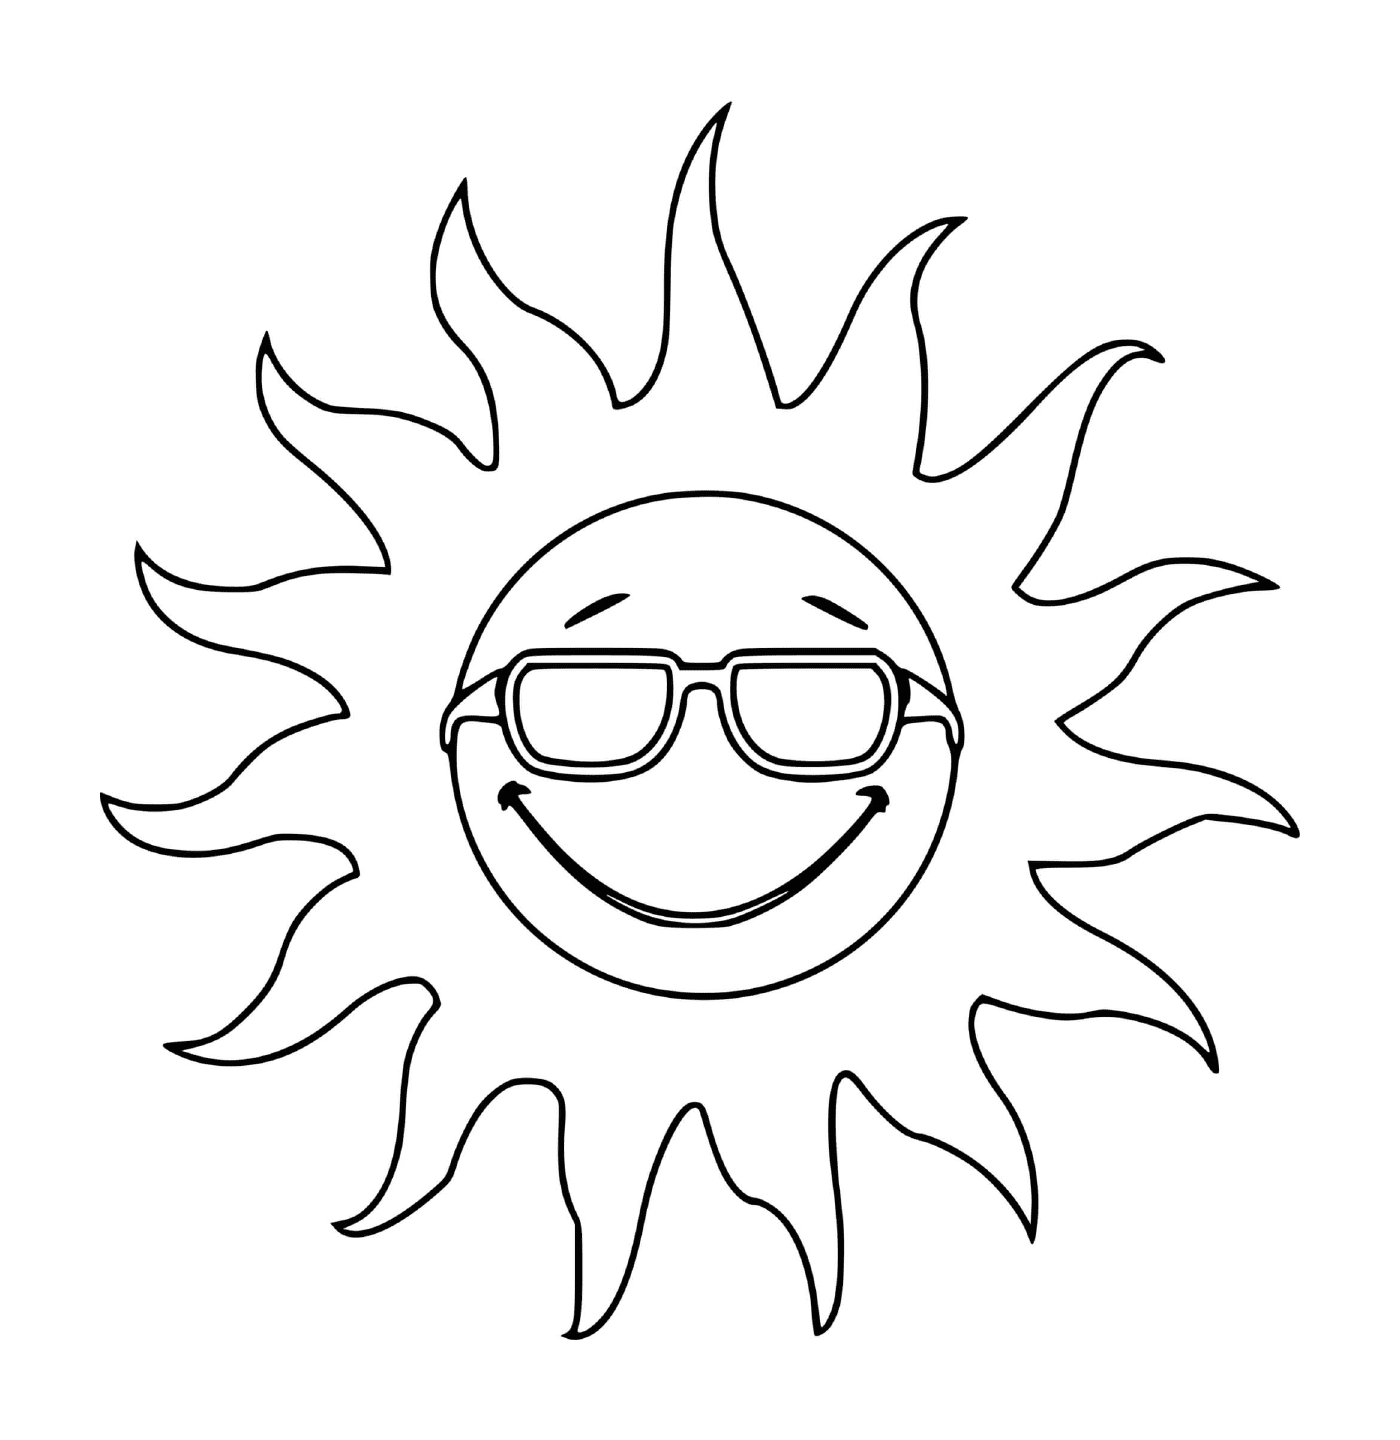  Sol sonriente con gafas 